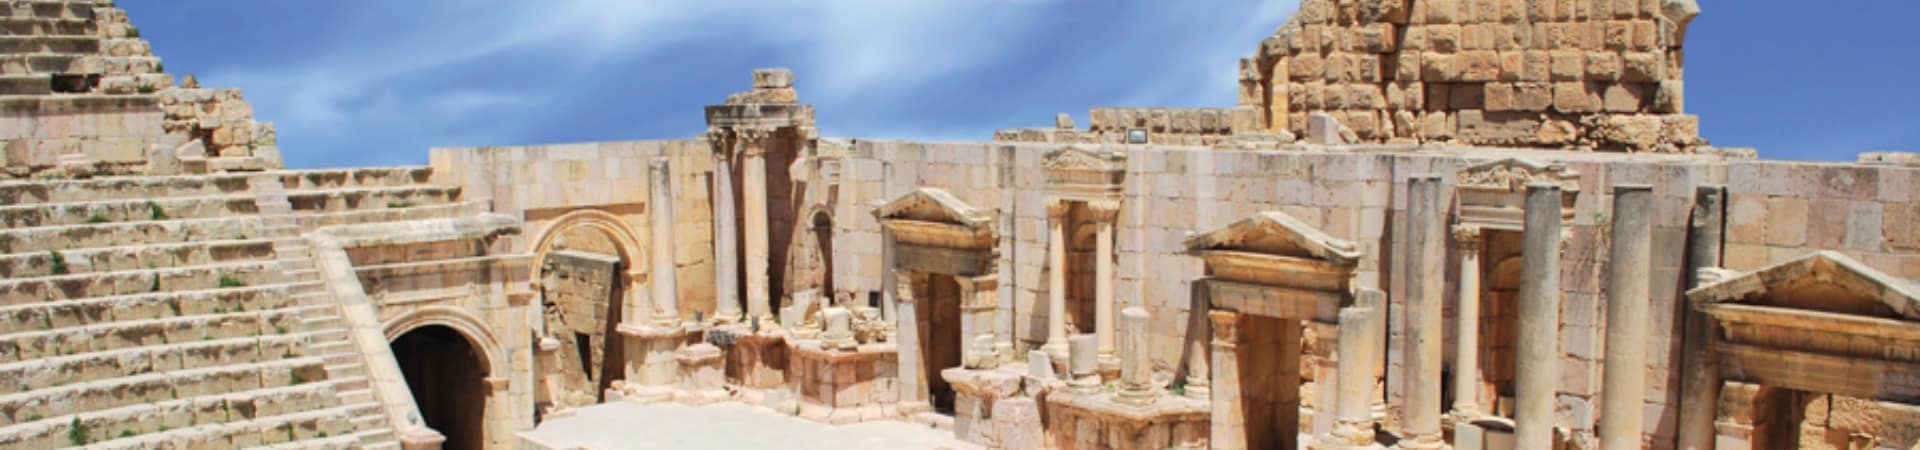 Atração turística Jerash, ruínas greco-romana, Gera, Jordânia